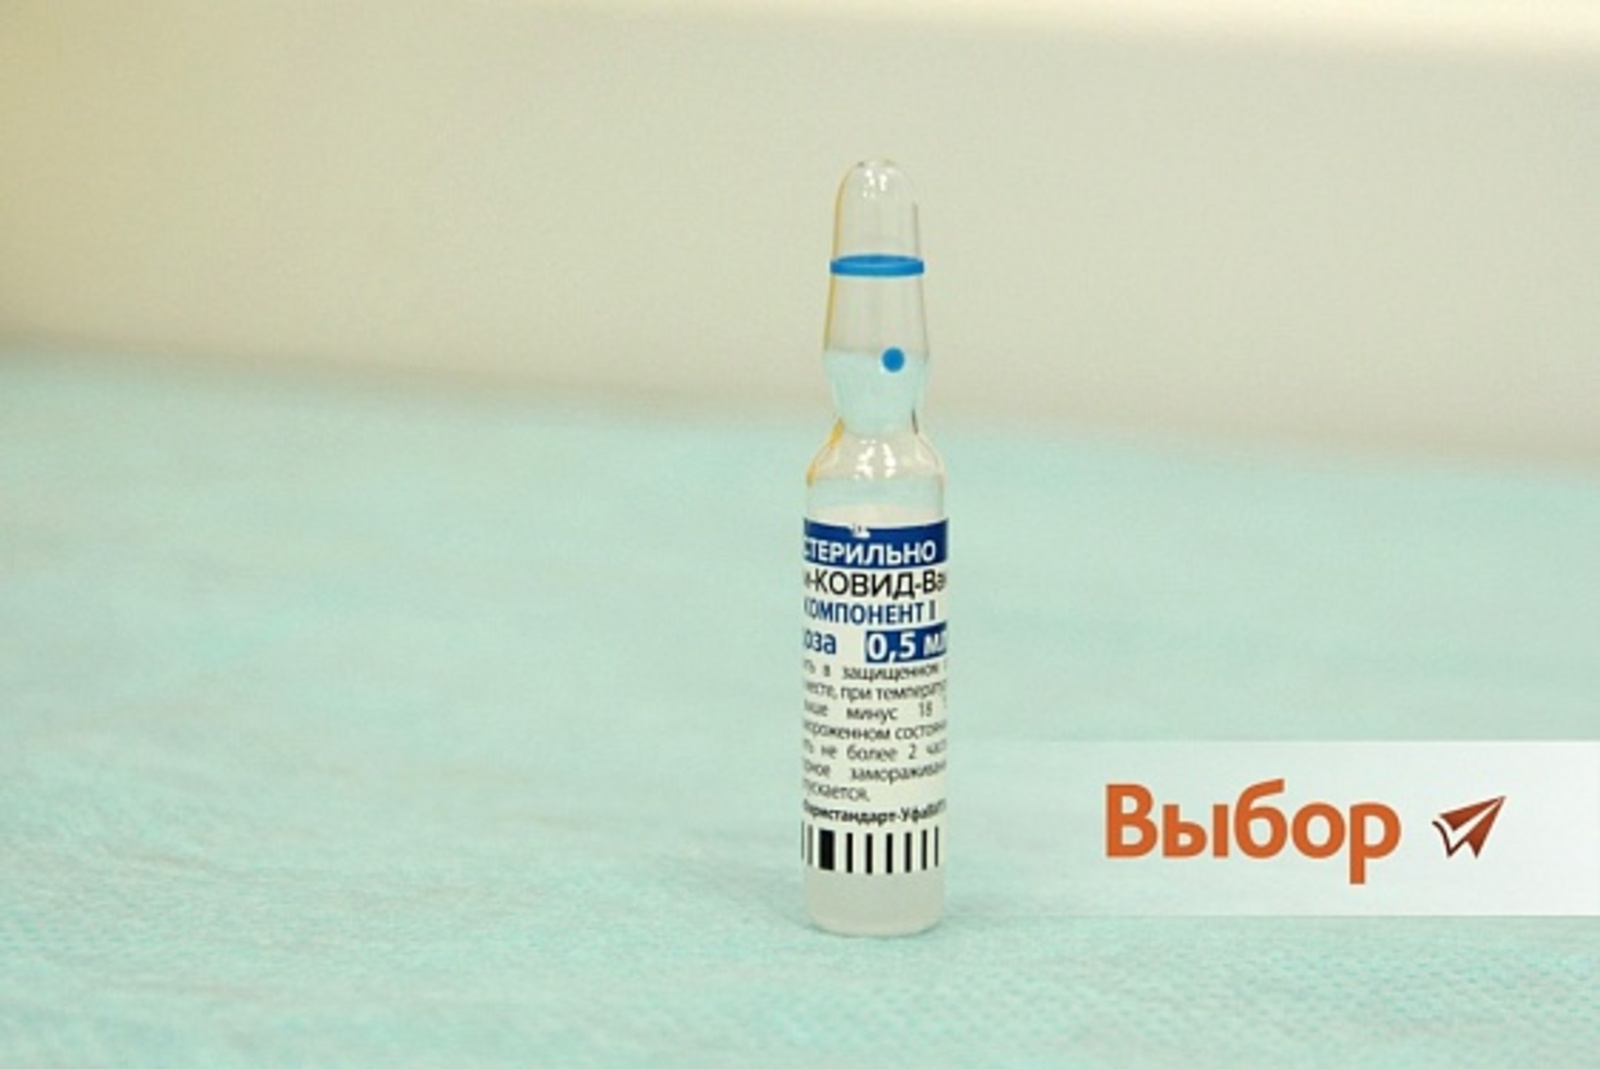 Самоизоляция и обязательная вакцинация в Башкирии – самое главное